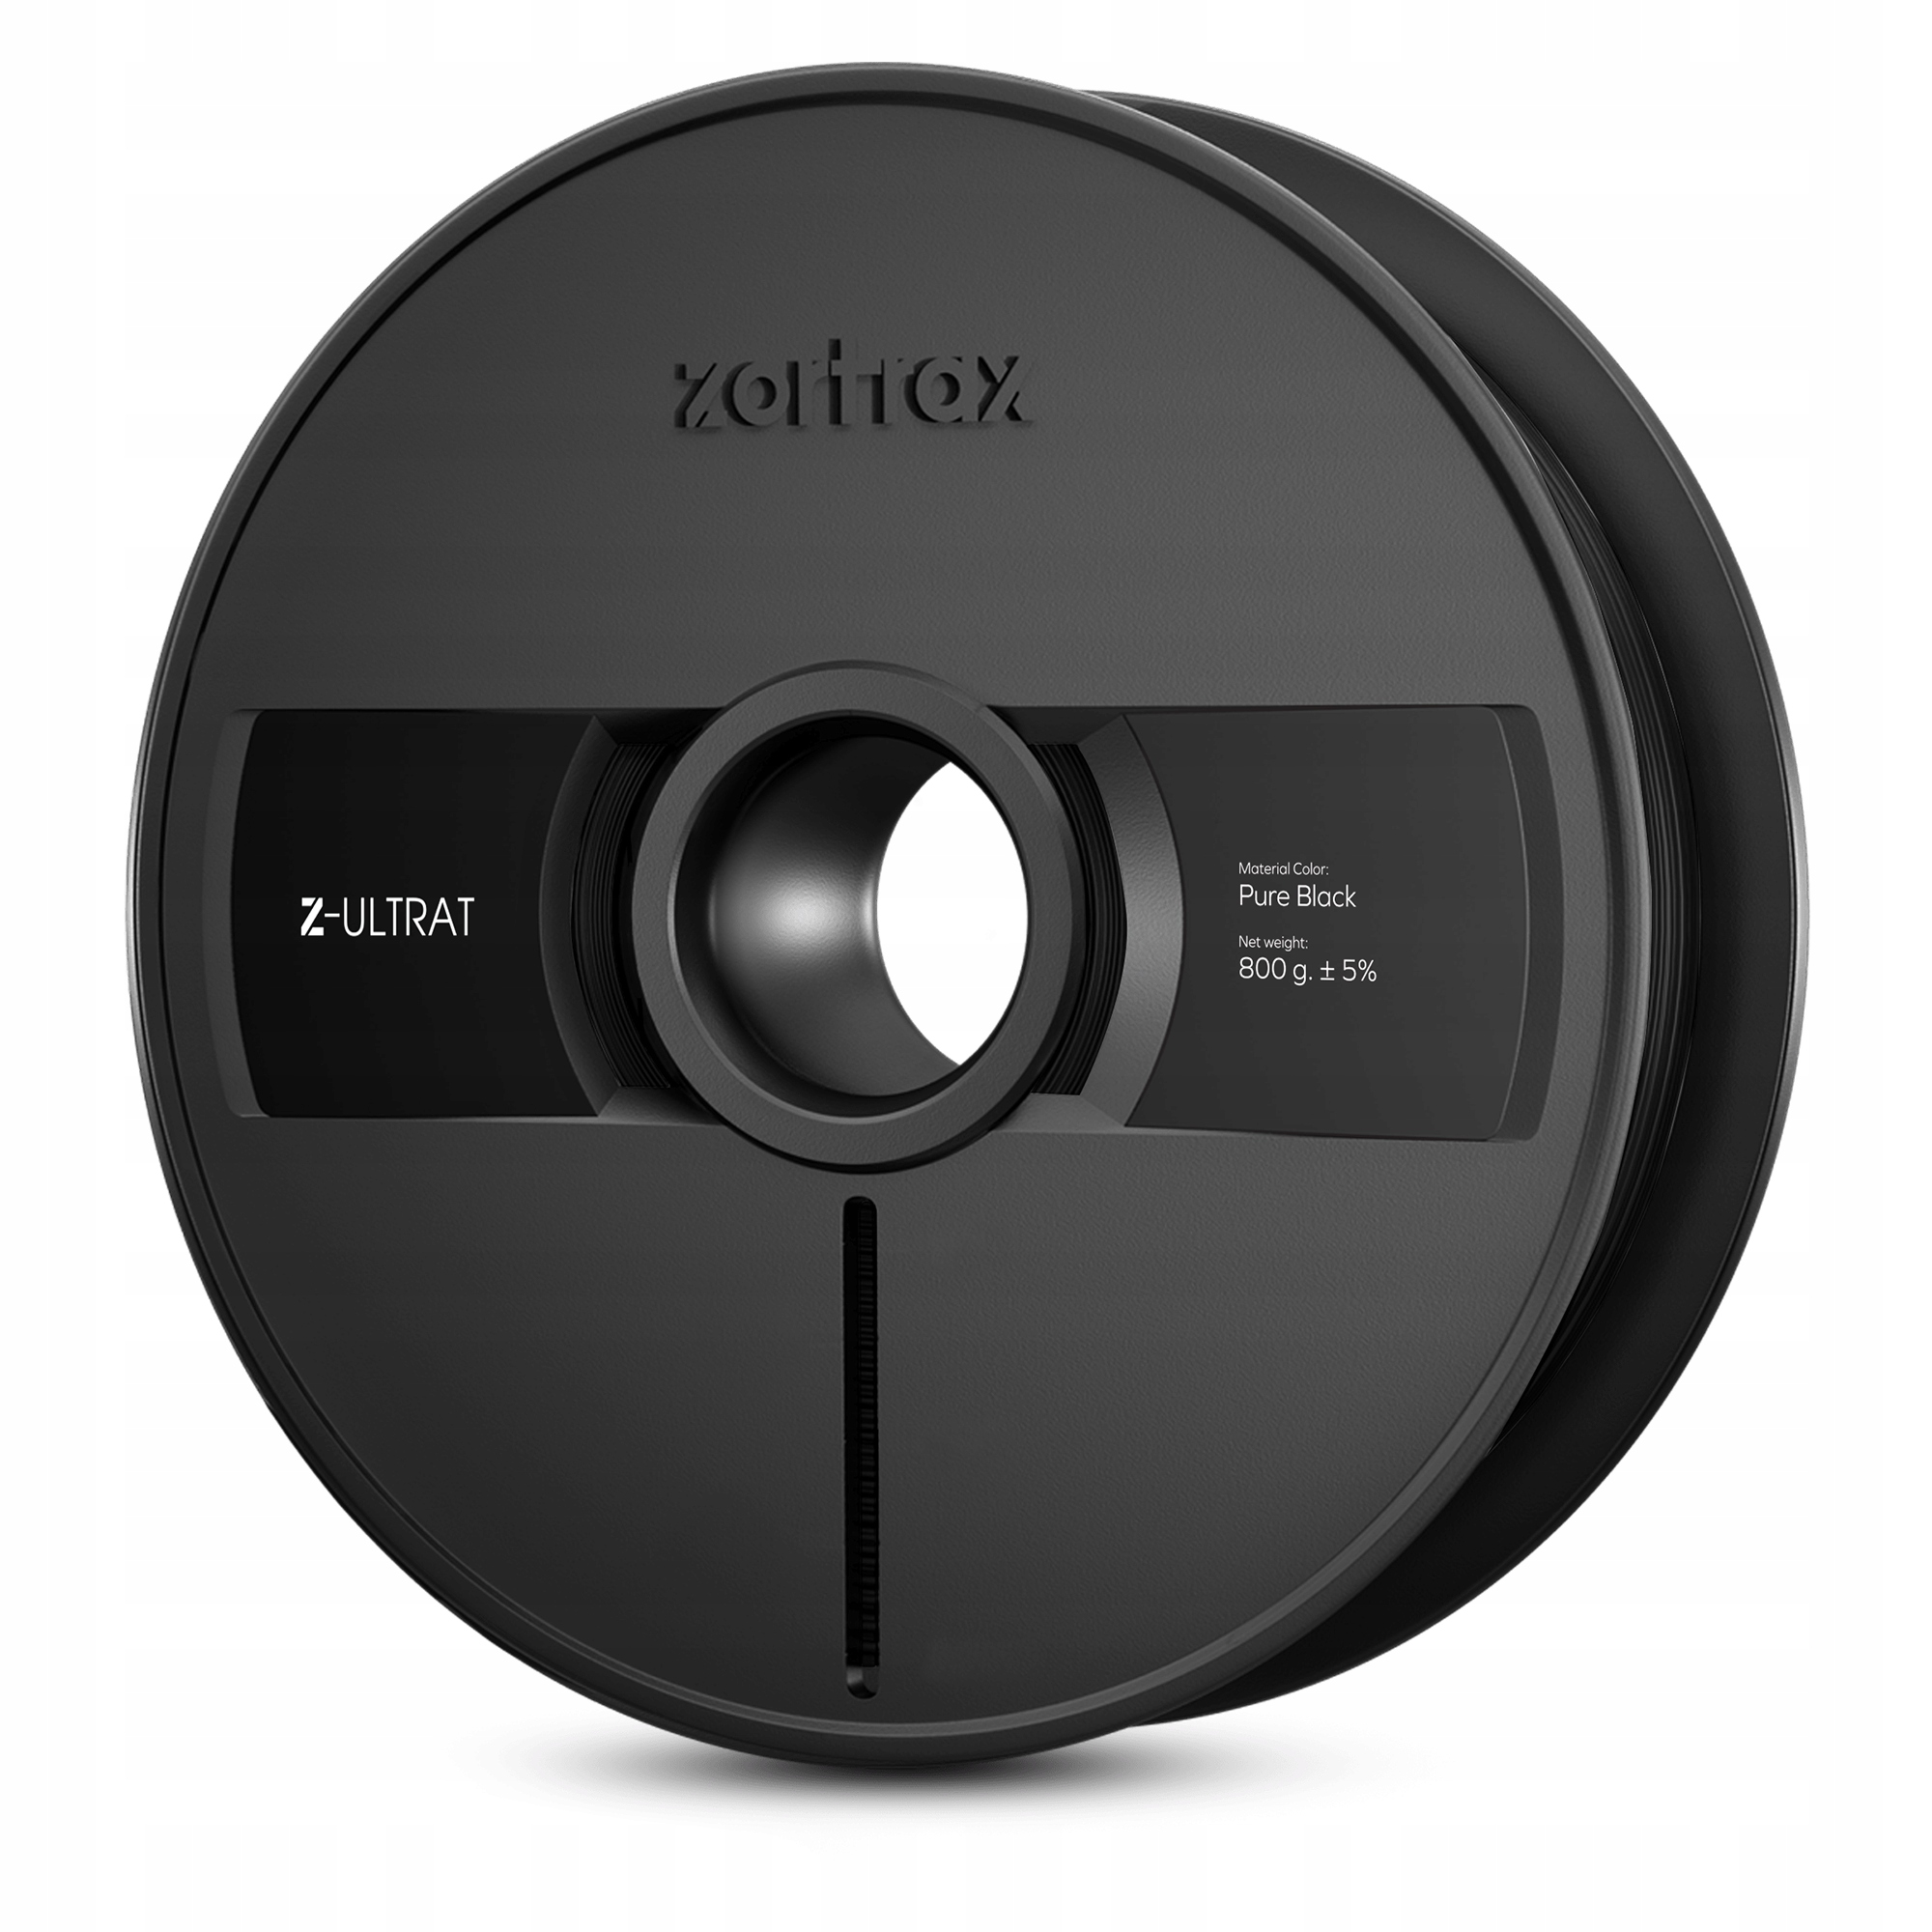 Filament Zortrax Z-Ultrat 1,75mm Black/Pure Black 800g